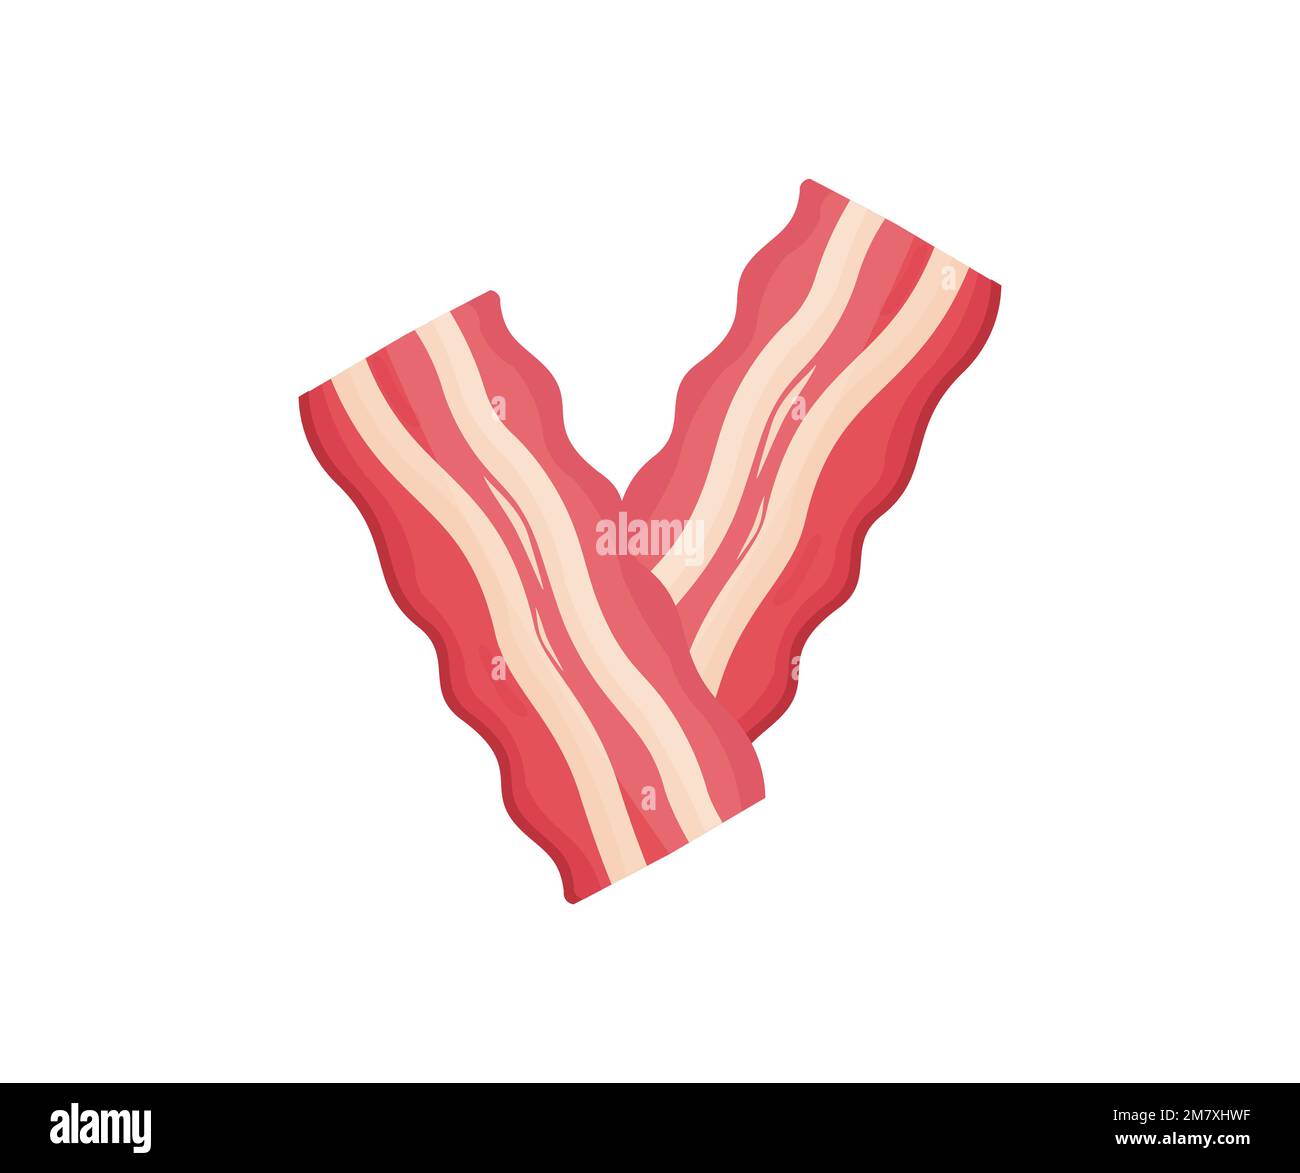 Tranches de bacon frites. Deux tranches de bacon croustillant sur fond blanc avec logo. Bacon frit pour hamburger et sandwich de nourriture pour les magasins. Illustration de Vecteur